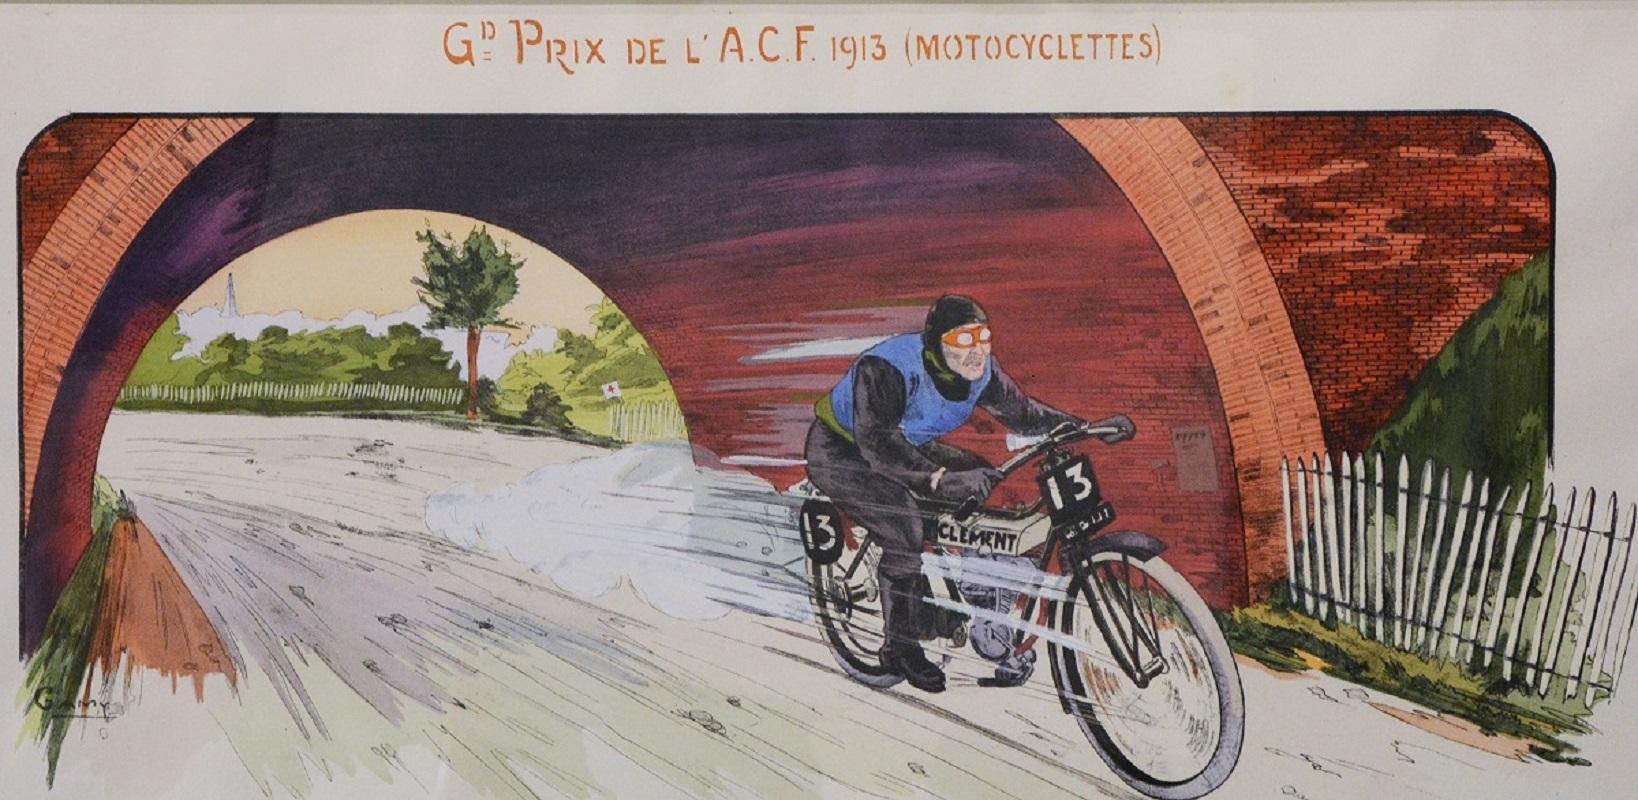 Grand Prix de lA.C.F. 1913 (Motocyclettes). (Grau), Print, von Unknown